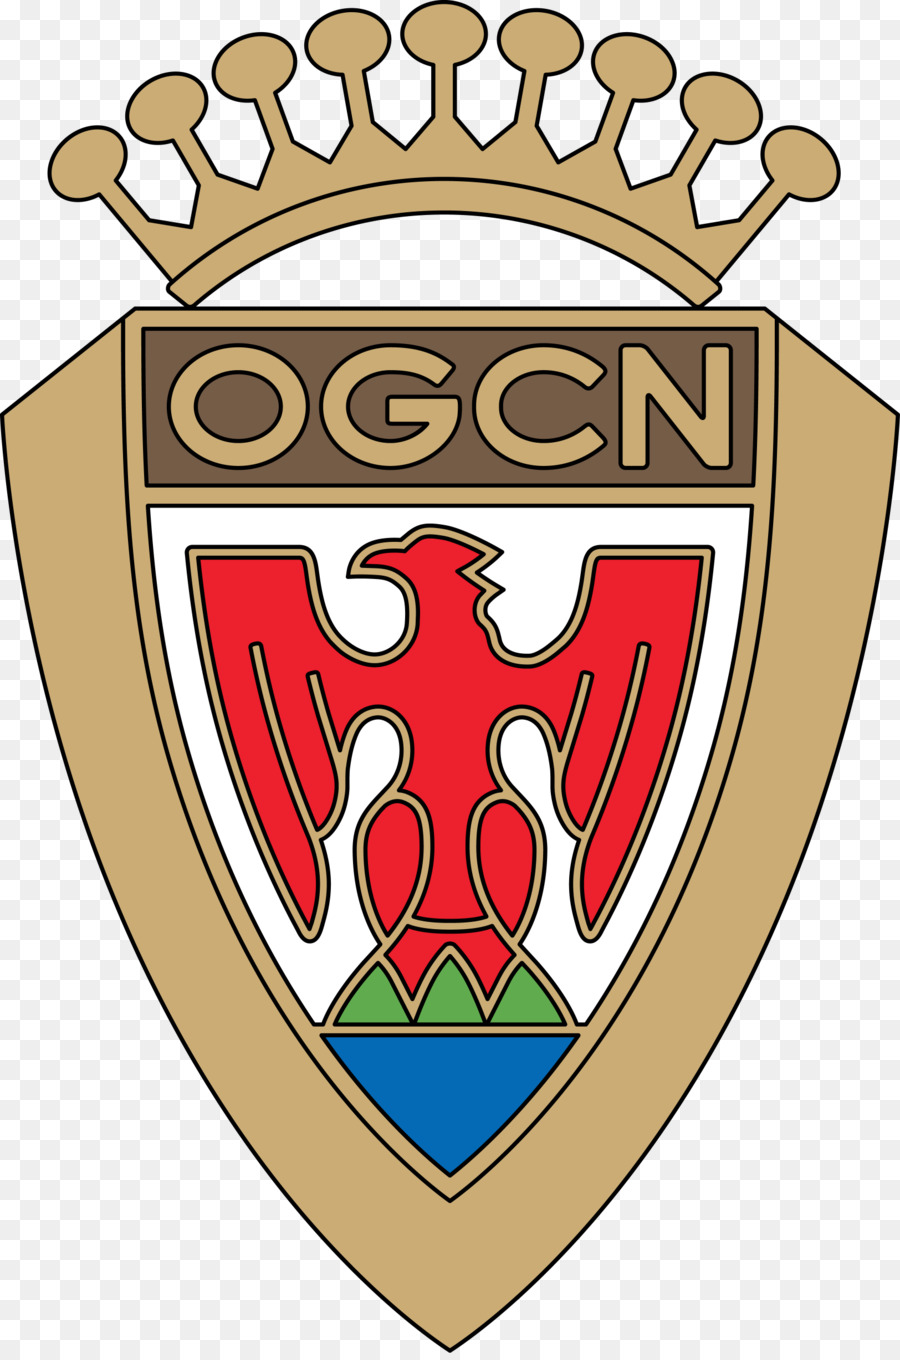 OGC Nice Logo Vector đồ họa Stade du Ray Đóng gói PostScript - logo câu lạc bộ bóng đá richmond png richmondfc